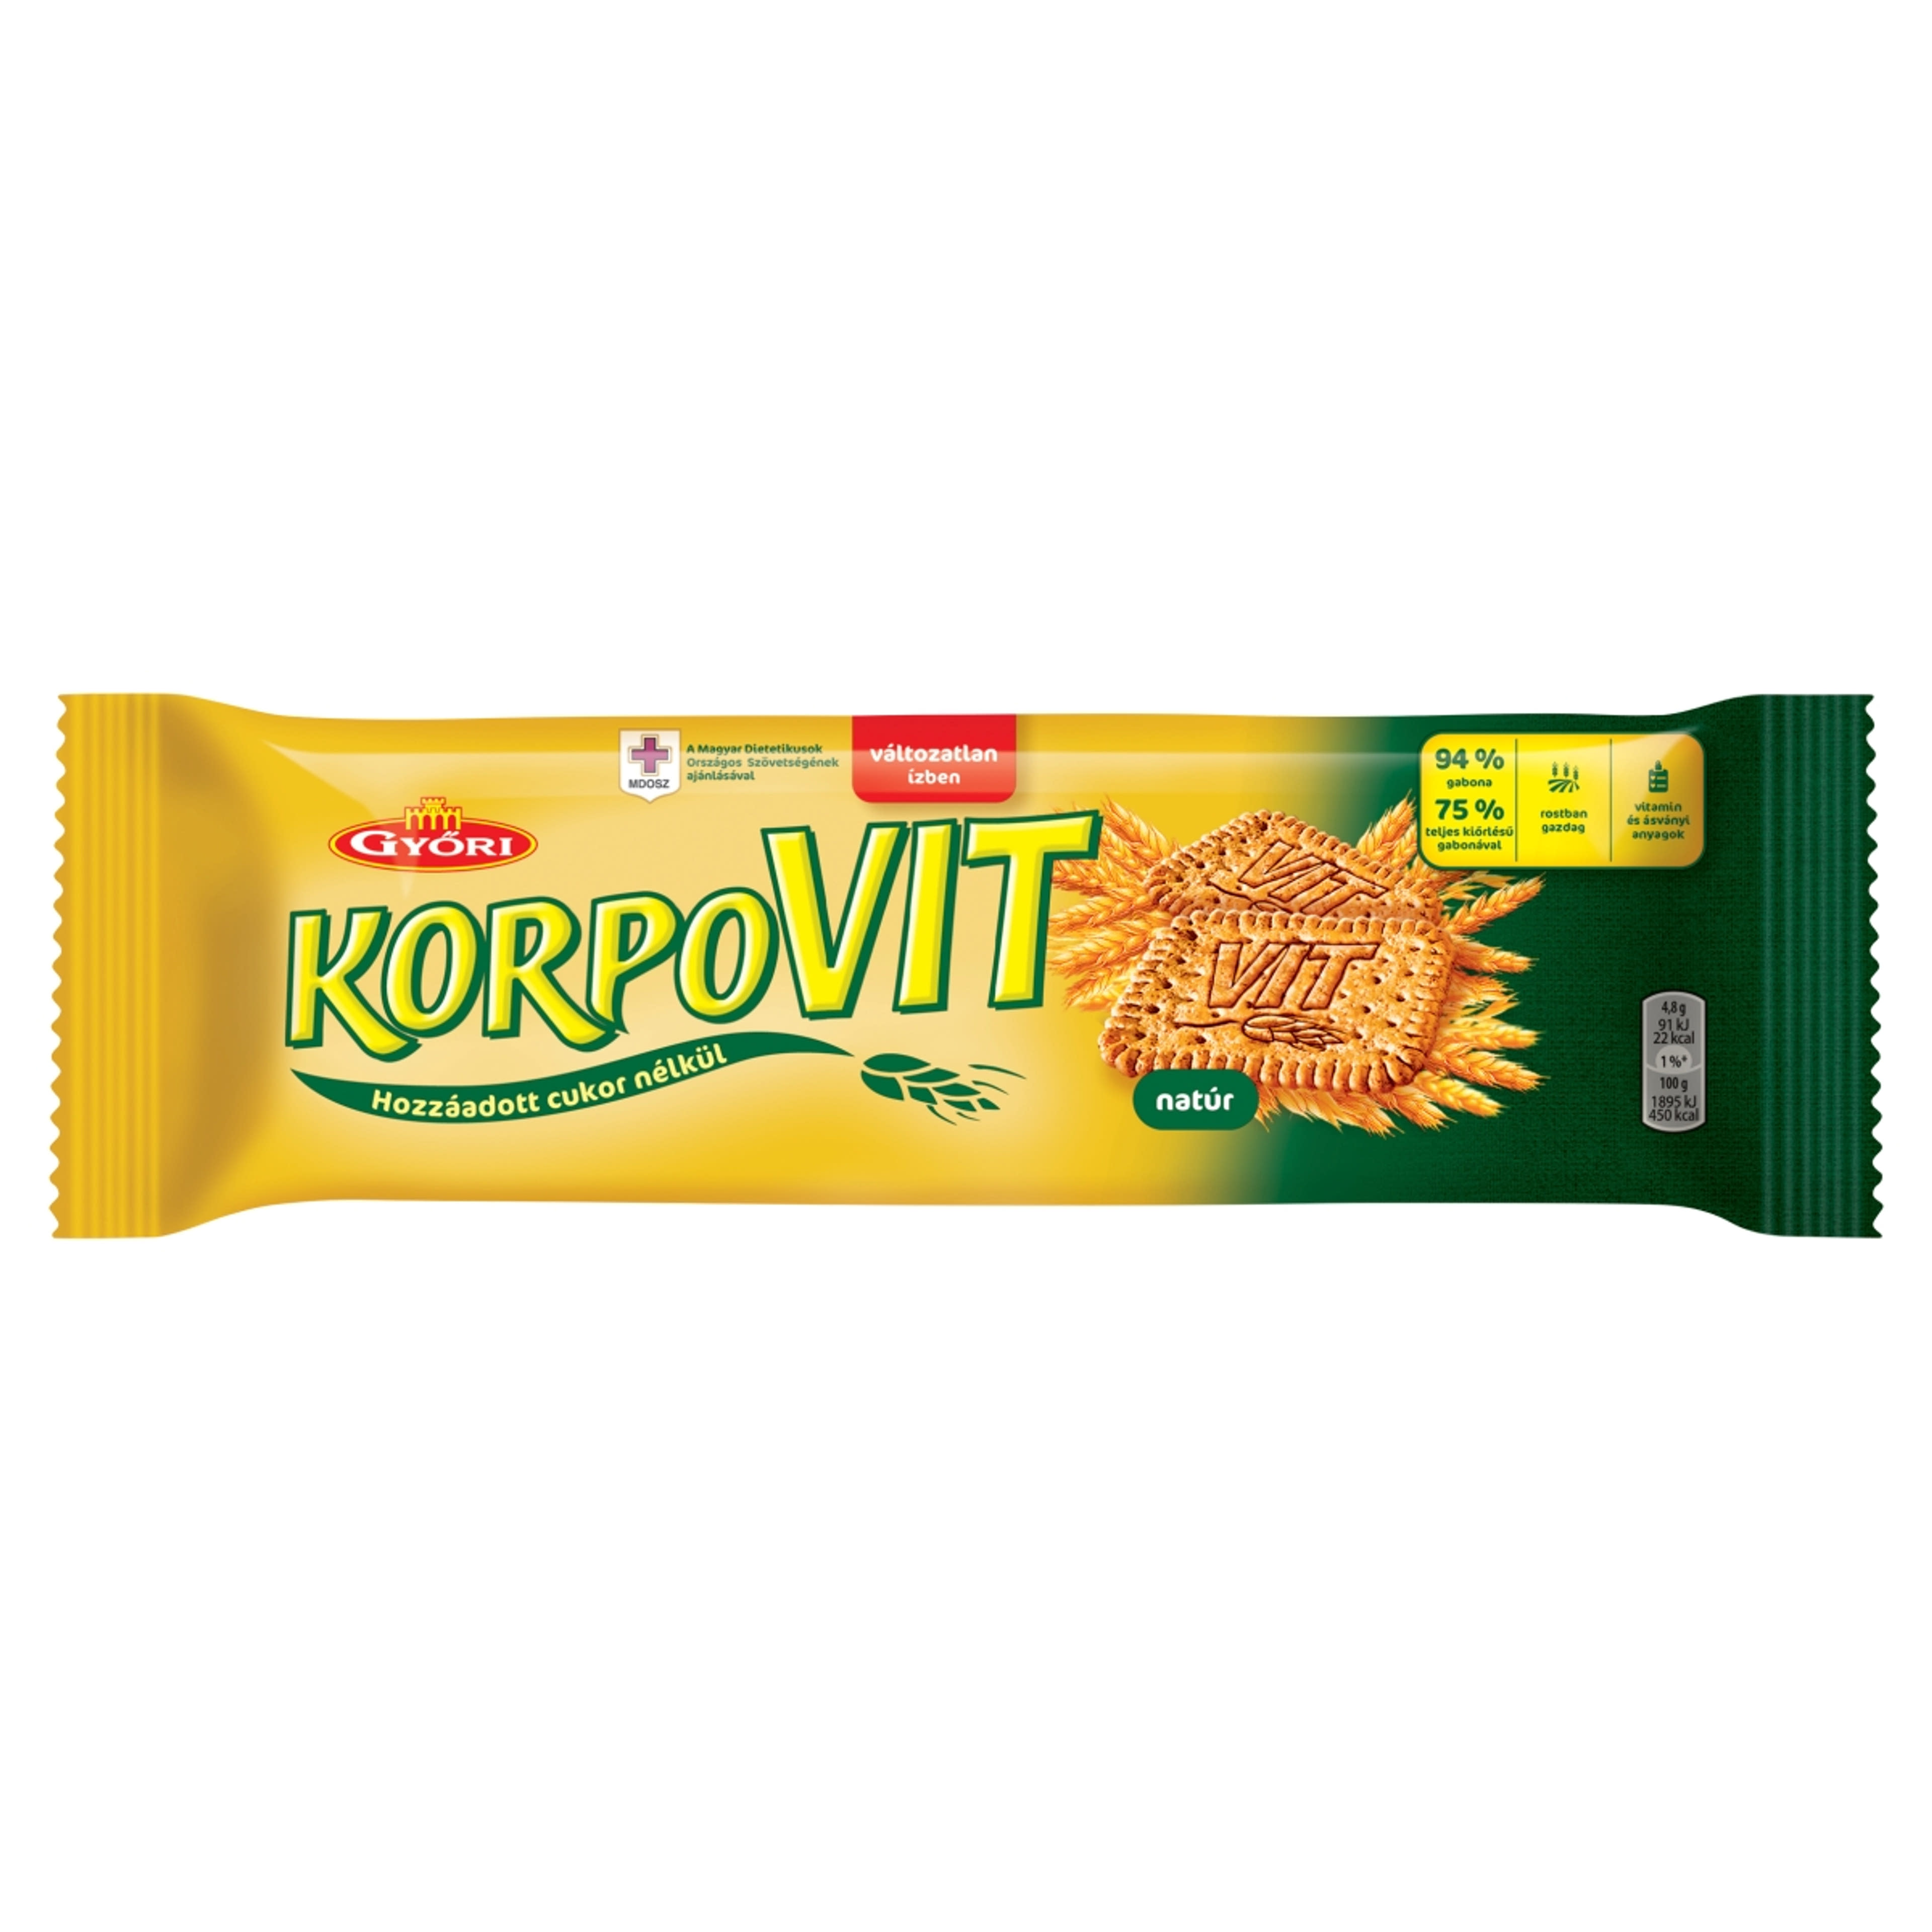 Győri korpovit keksz - 174 g